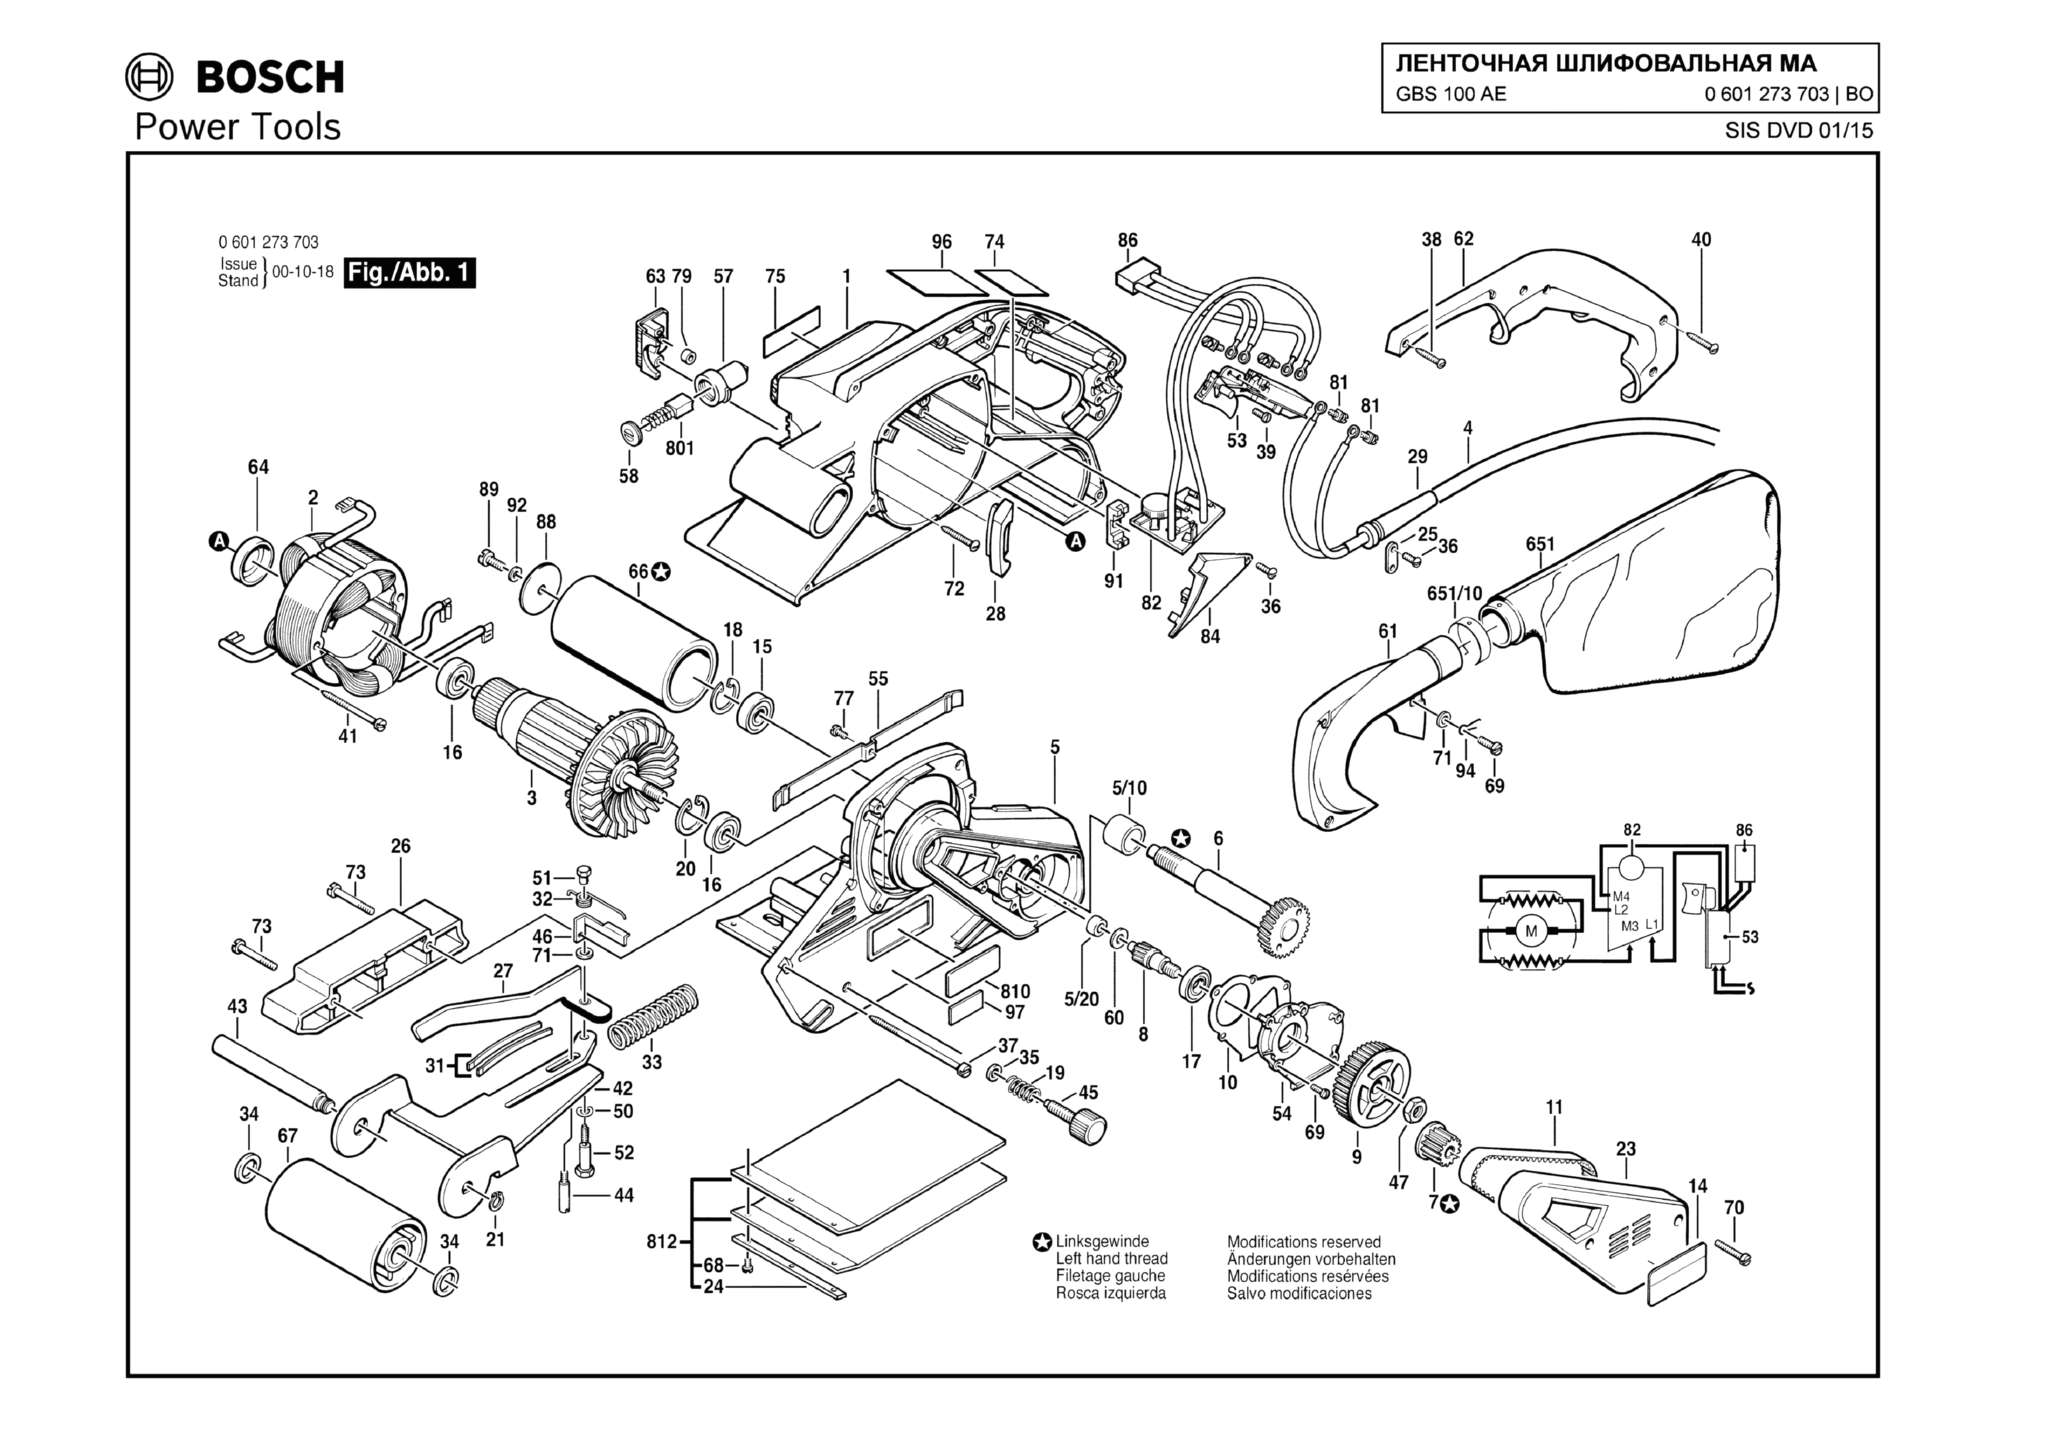 Запчасти, схема и деталировка Bosch GBS 100 AE (ТИП 0601273703)